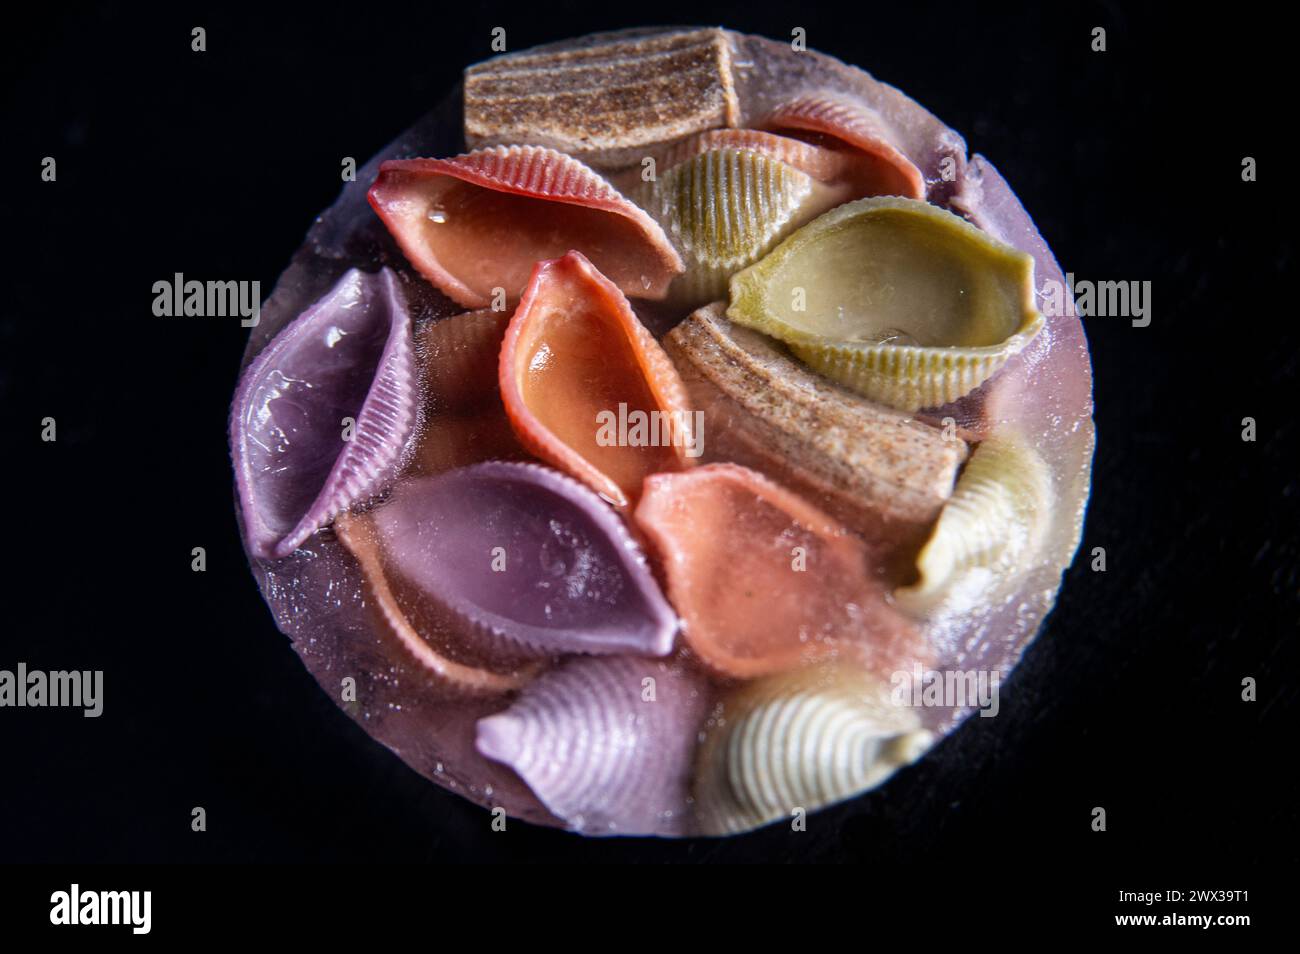 Nahaufnahme farbenfroher Rigatoni- und Muschelnudelformen, die in Eis auf schwarzem Hintergrund gefroren sind. Stockfoto